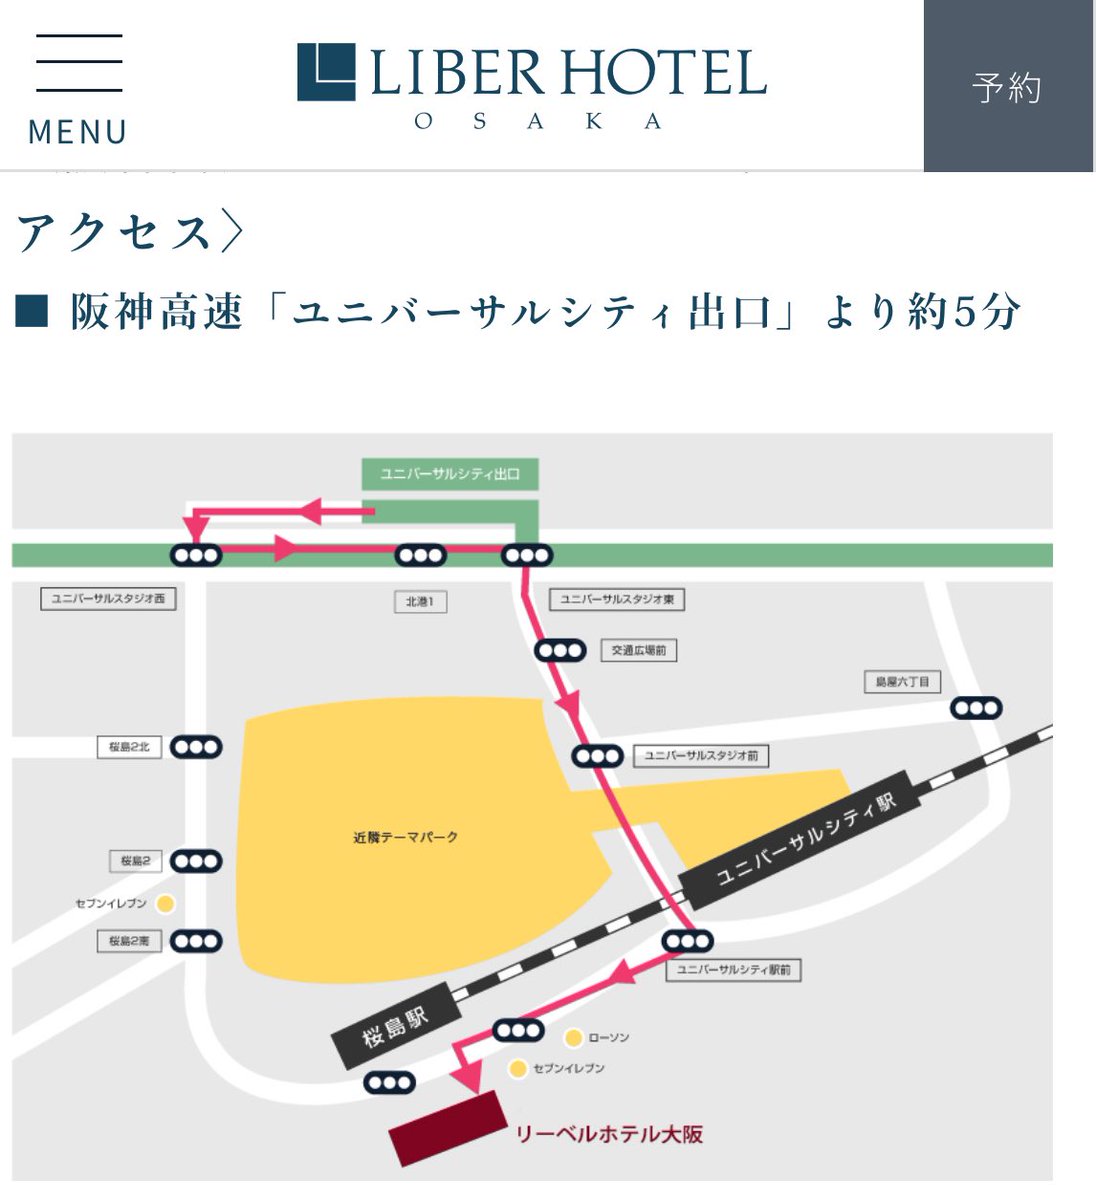 リーベルホテルがユニバ公式ホテルじゃなくなった影響かユニバの名前使えなくなって近隣テーマパークってなってるの元カレみたいで面白い🤣